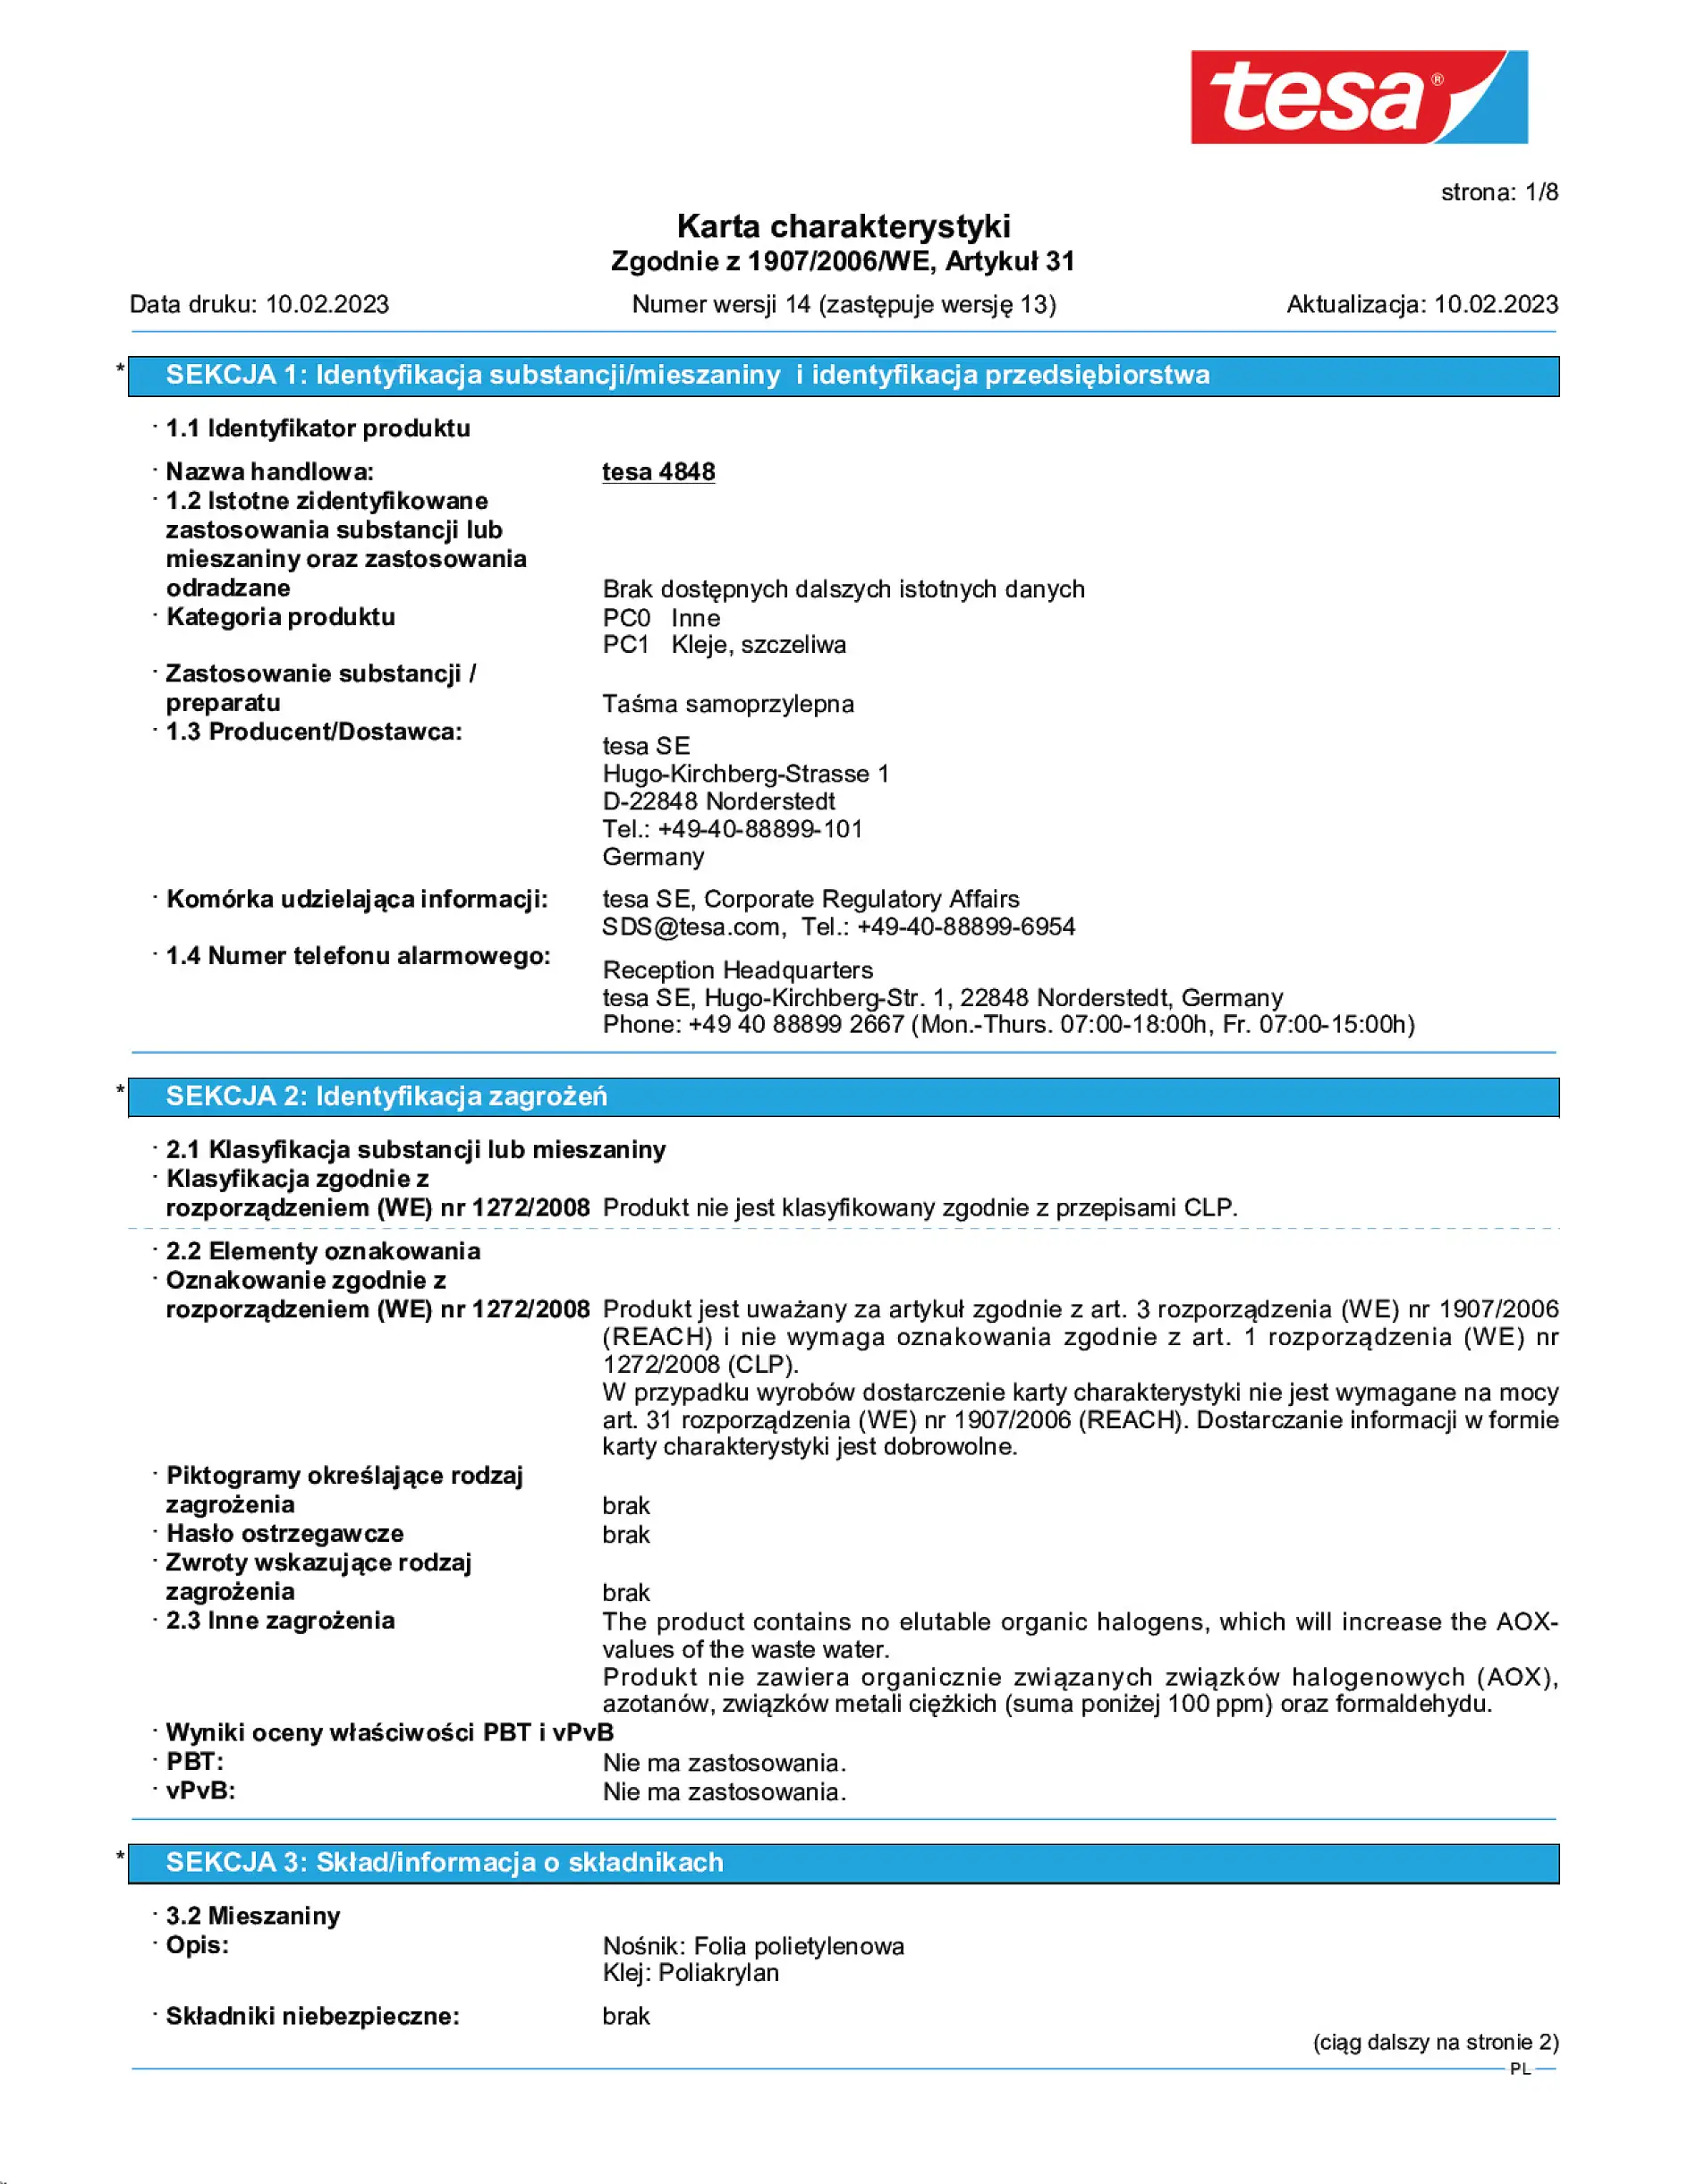 Safety data sheet_tesa® 04848_pl-PL_v14